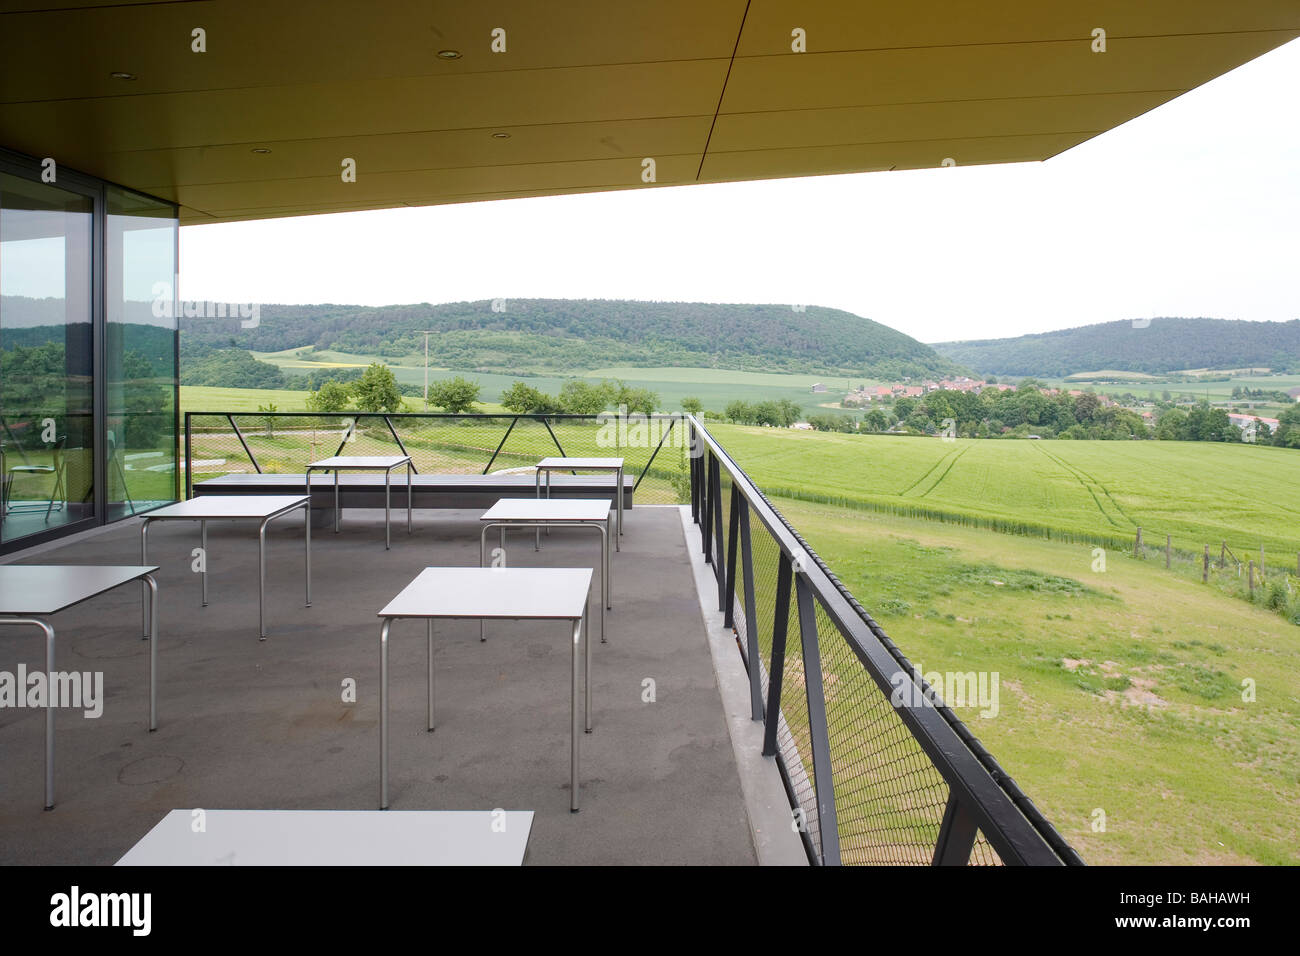 Nebra Ark, Wangen, Germany, Holzer Kobler Architekturen, Nebra ark cafe terrace. Stock Photo